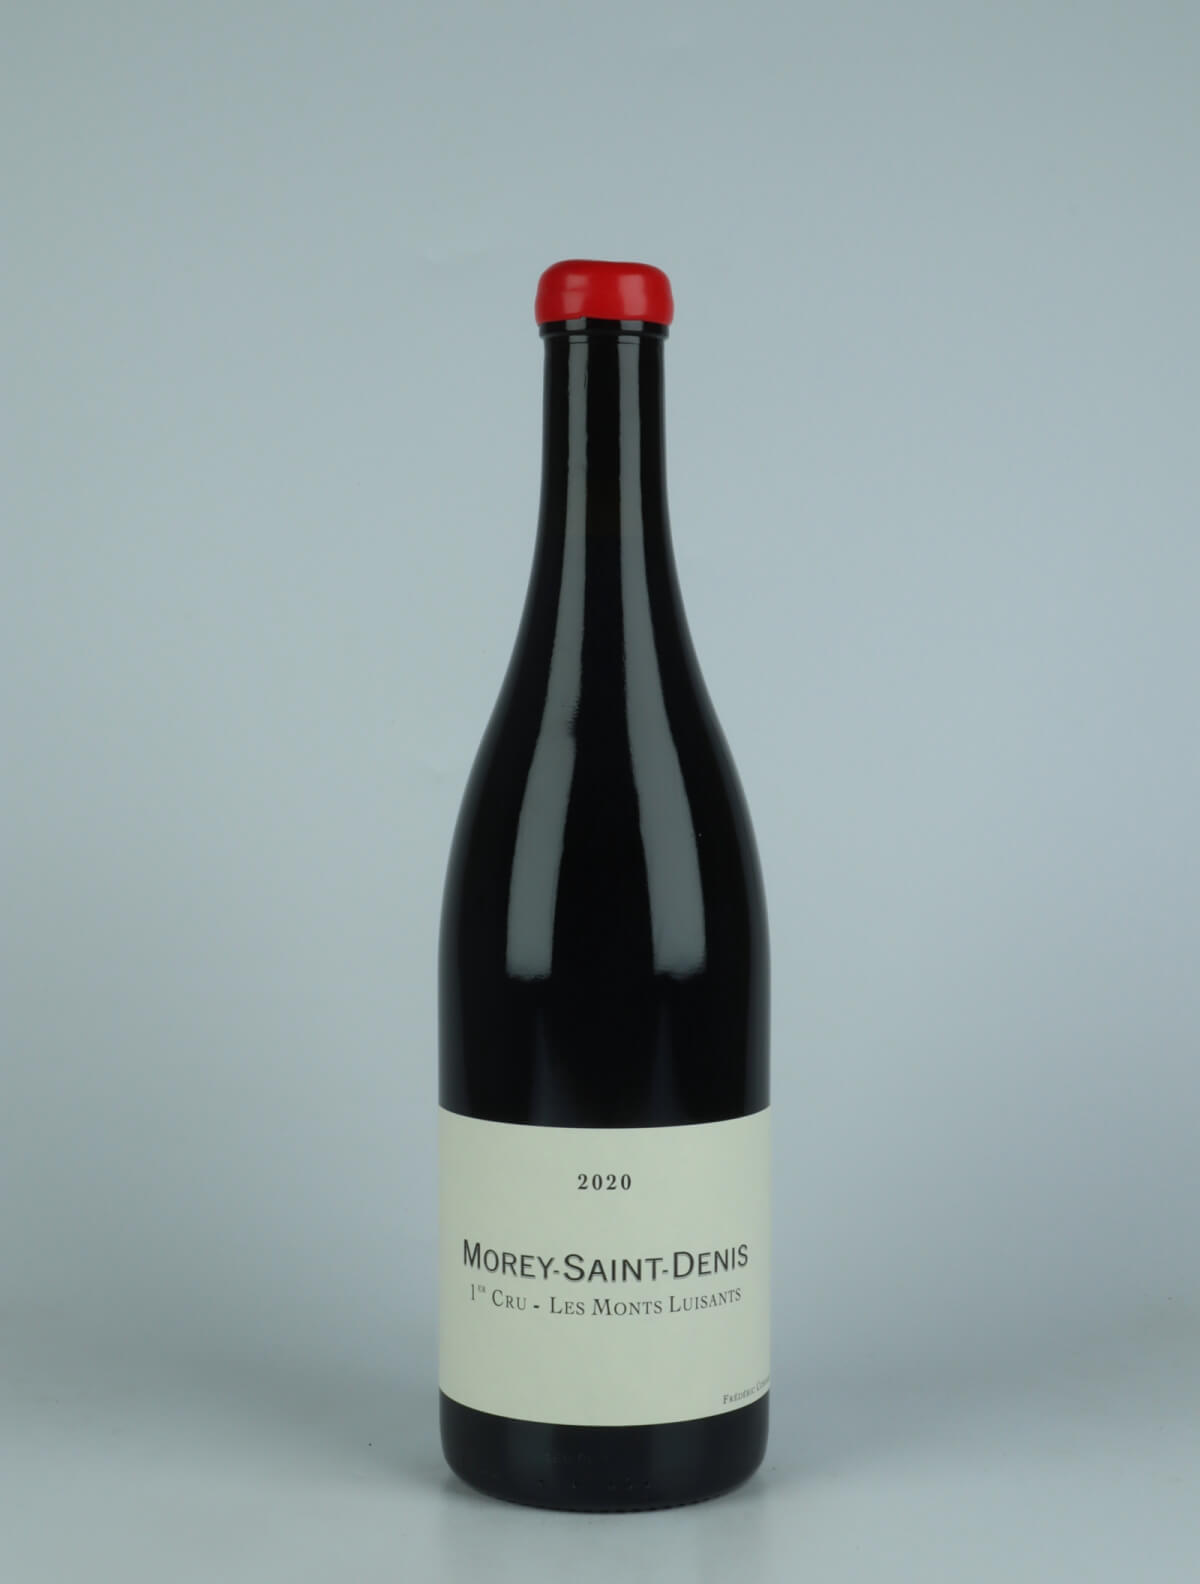 En flaske 2020 Morey Saint Denis 1. Cru - Les Monts Luisants Rødvin fra Frédéric Cossard, Bourgogne i Frankrig